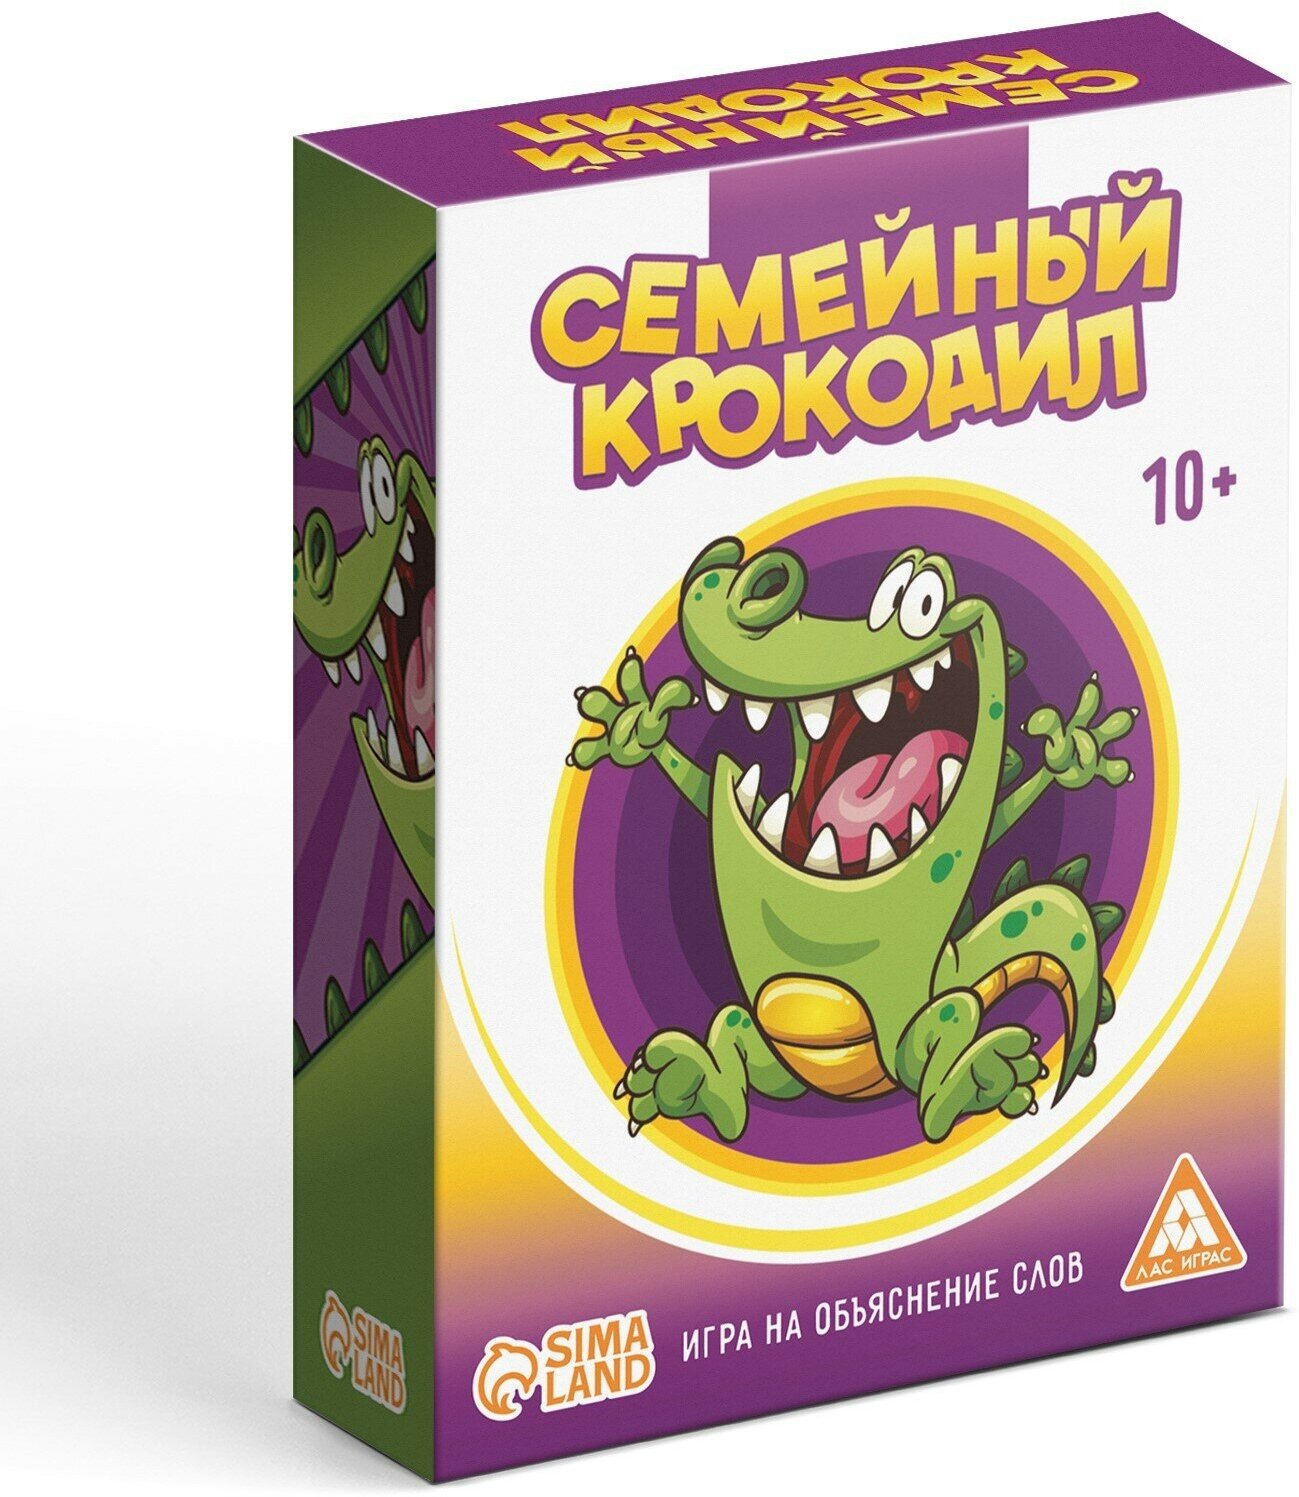 Настольная игра Лас Играс "Семейный крокодил", 70 карт, 10+